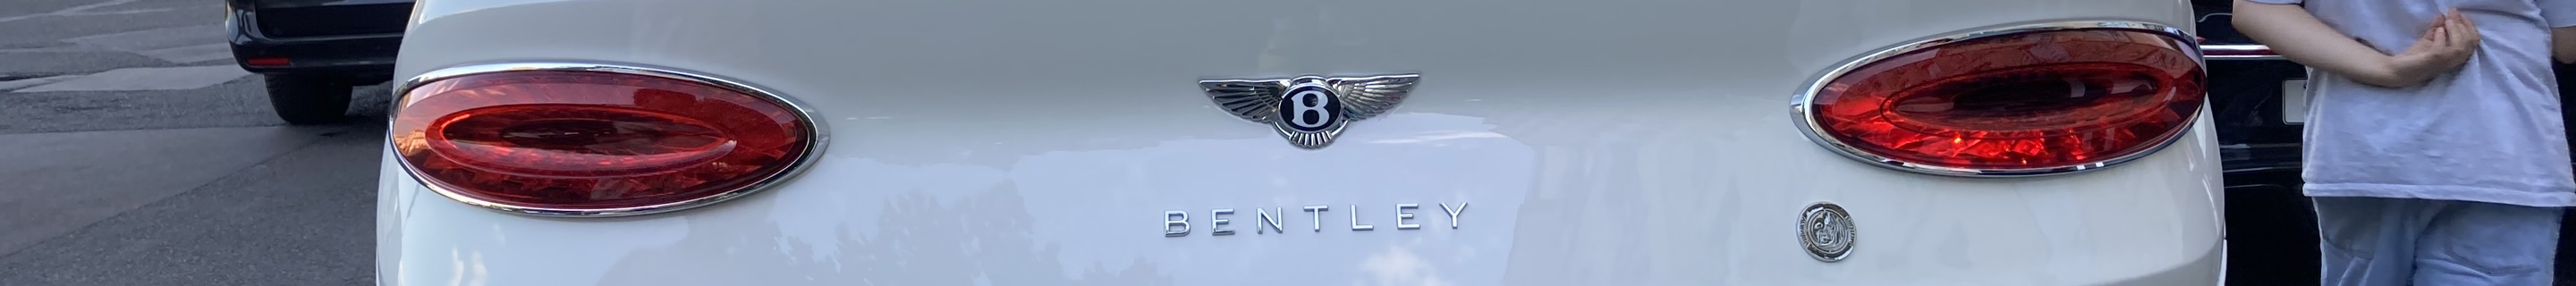 Bentley Bentayga Speed 2021 Qatar Edition